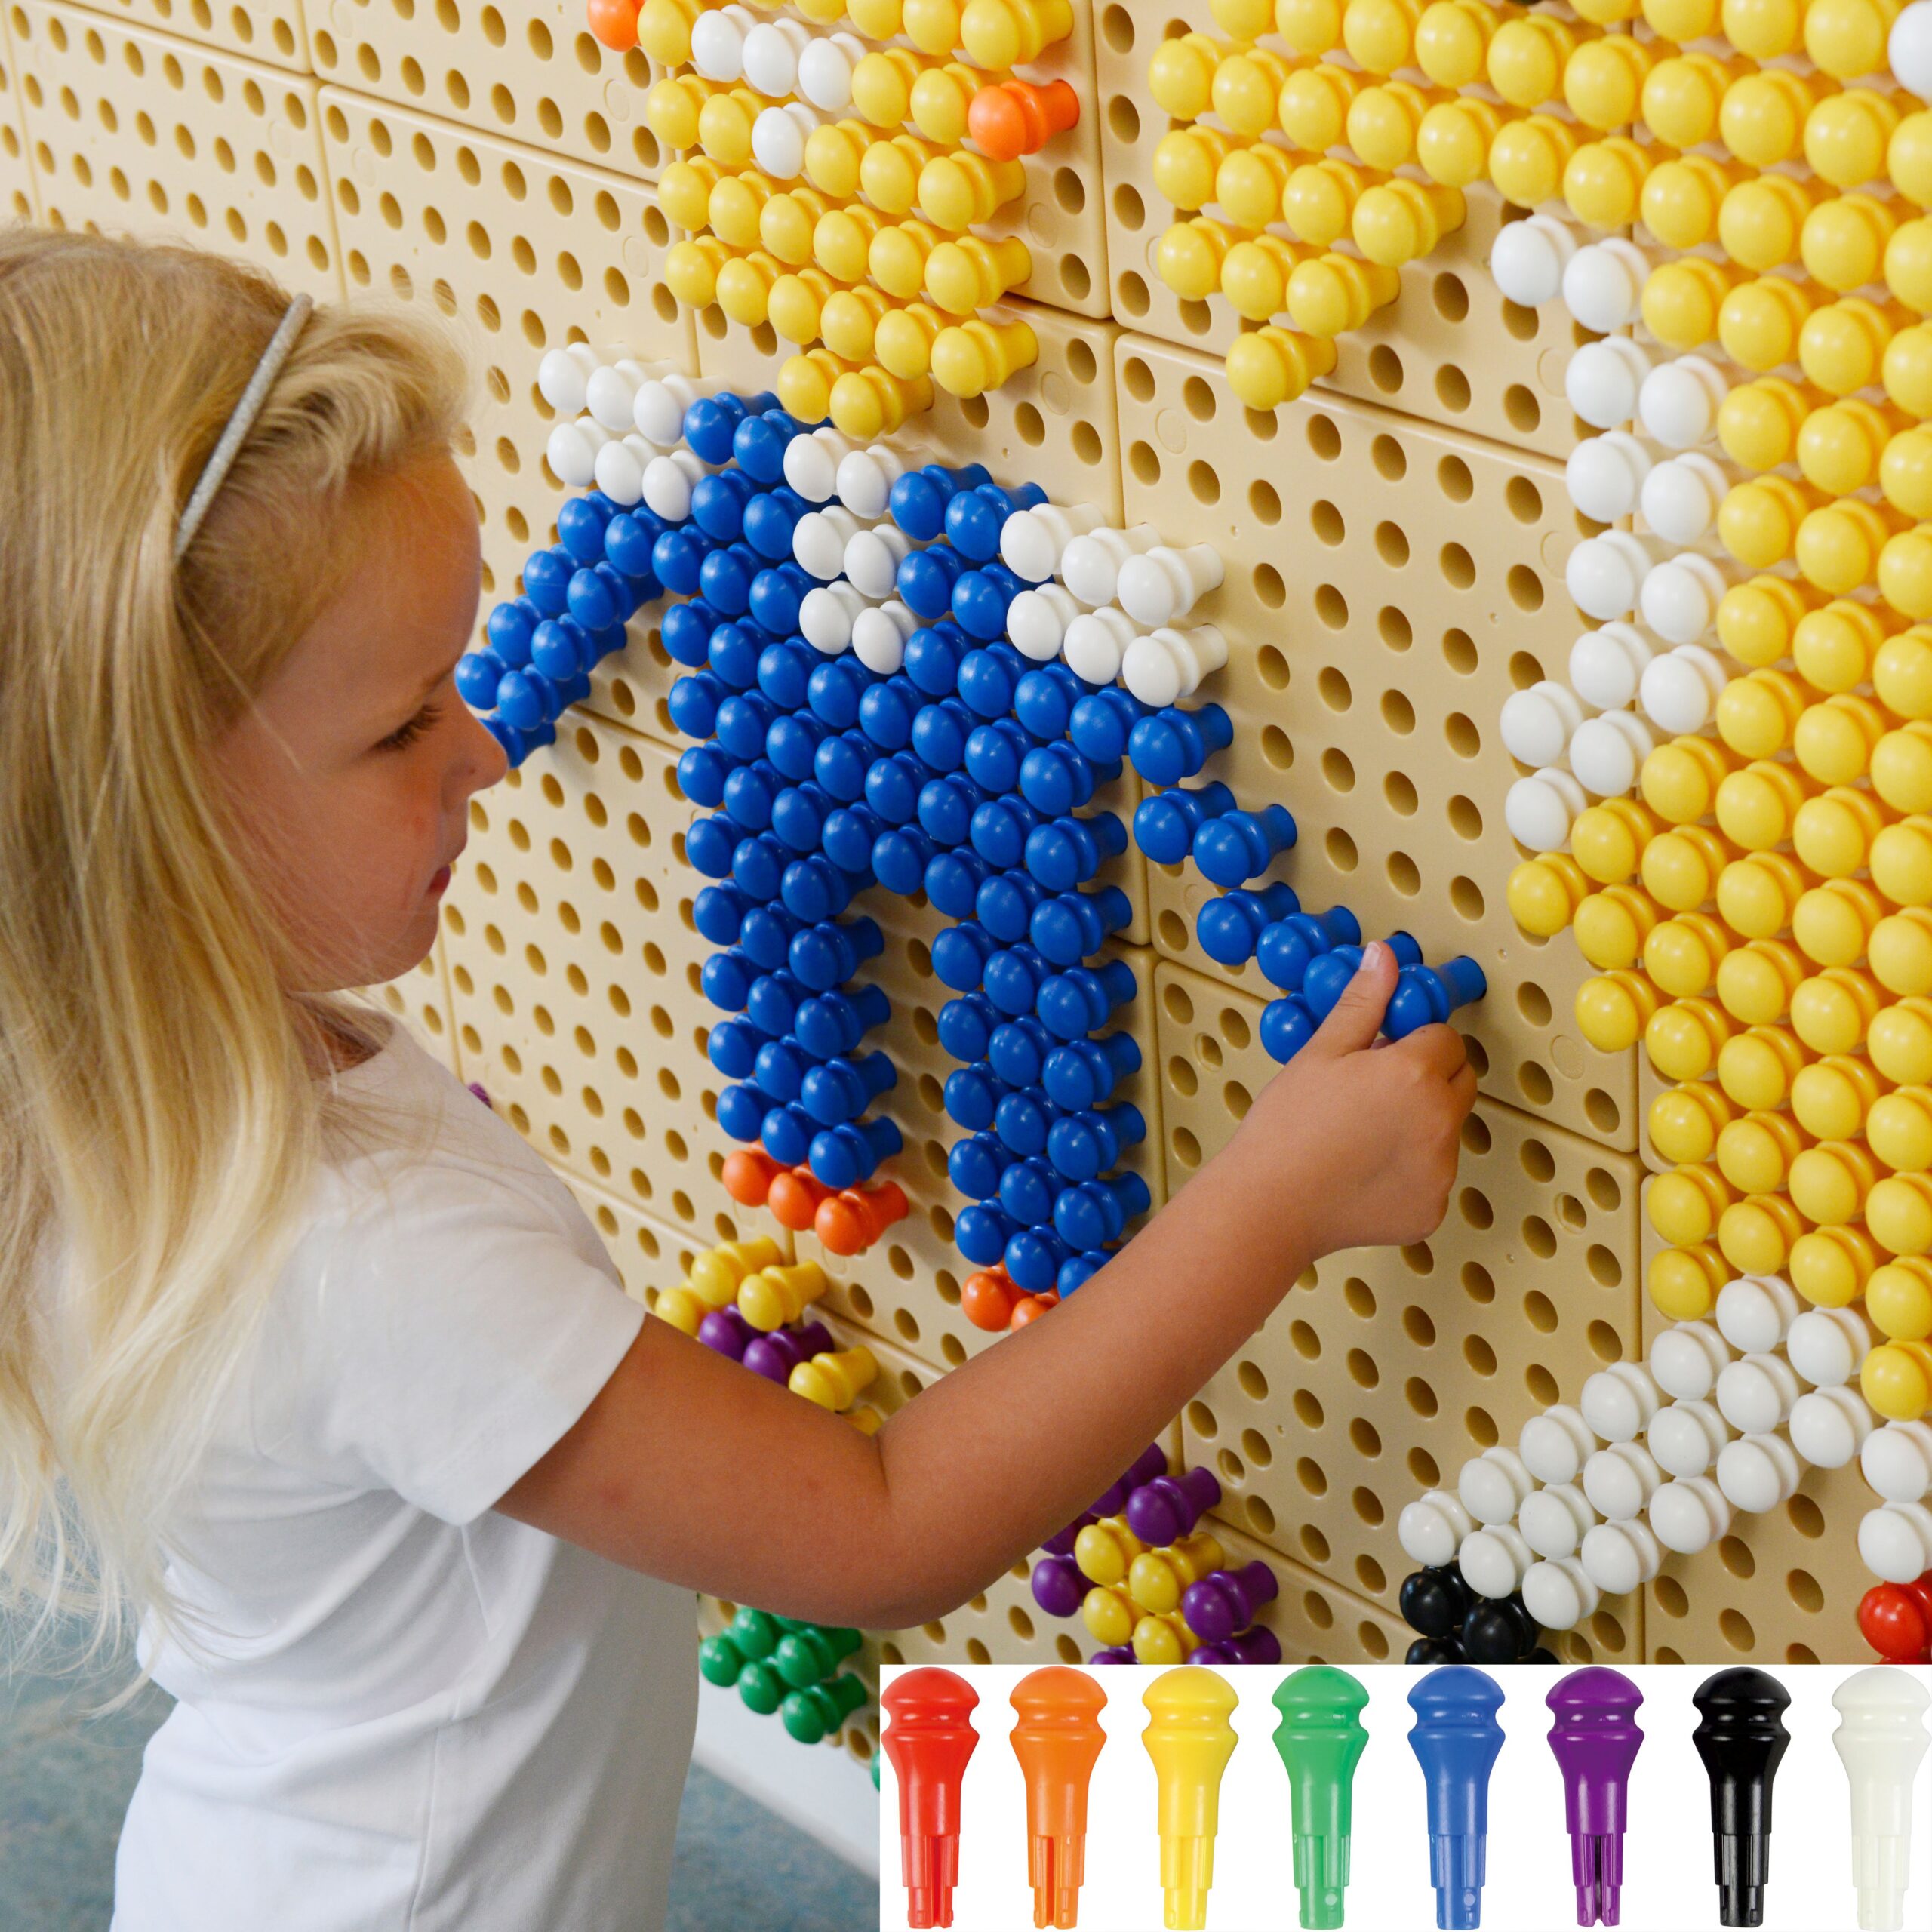 Kolorowe kołeczki do tablicy naukowej Masterkidz 512 sztuk 8 kolorów, zabawka dla dzieci